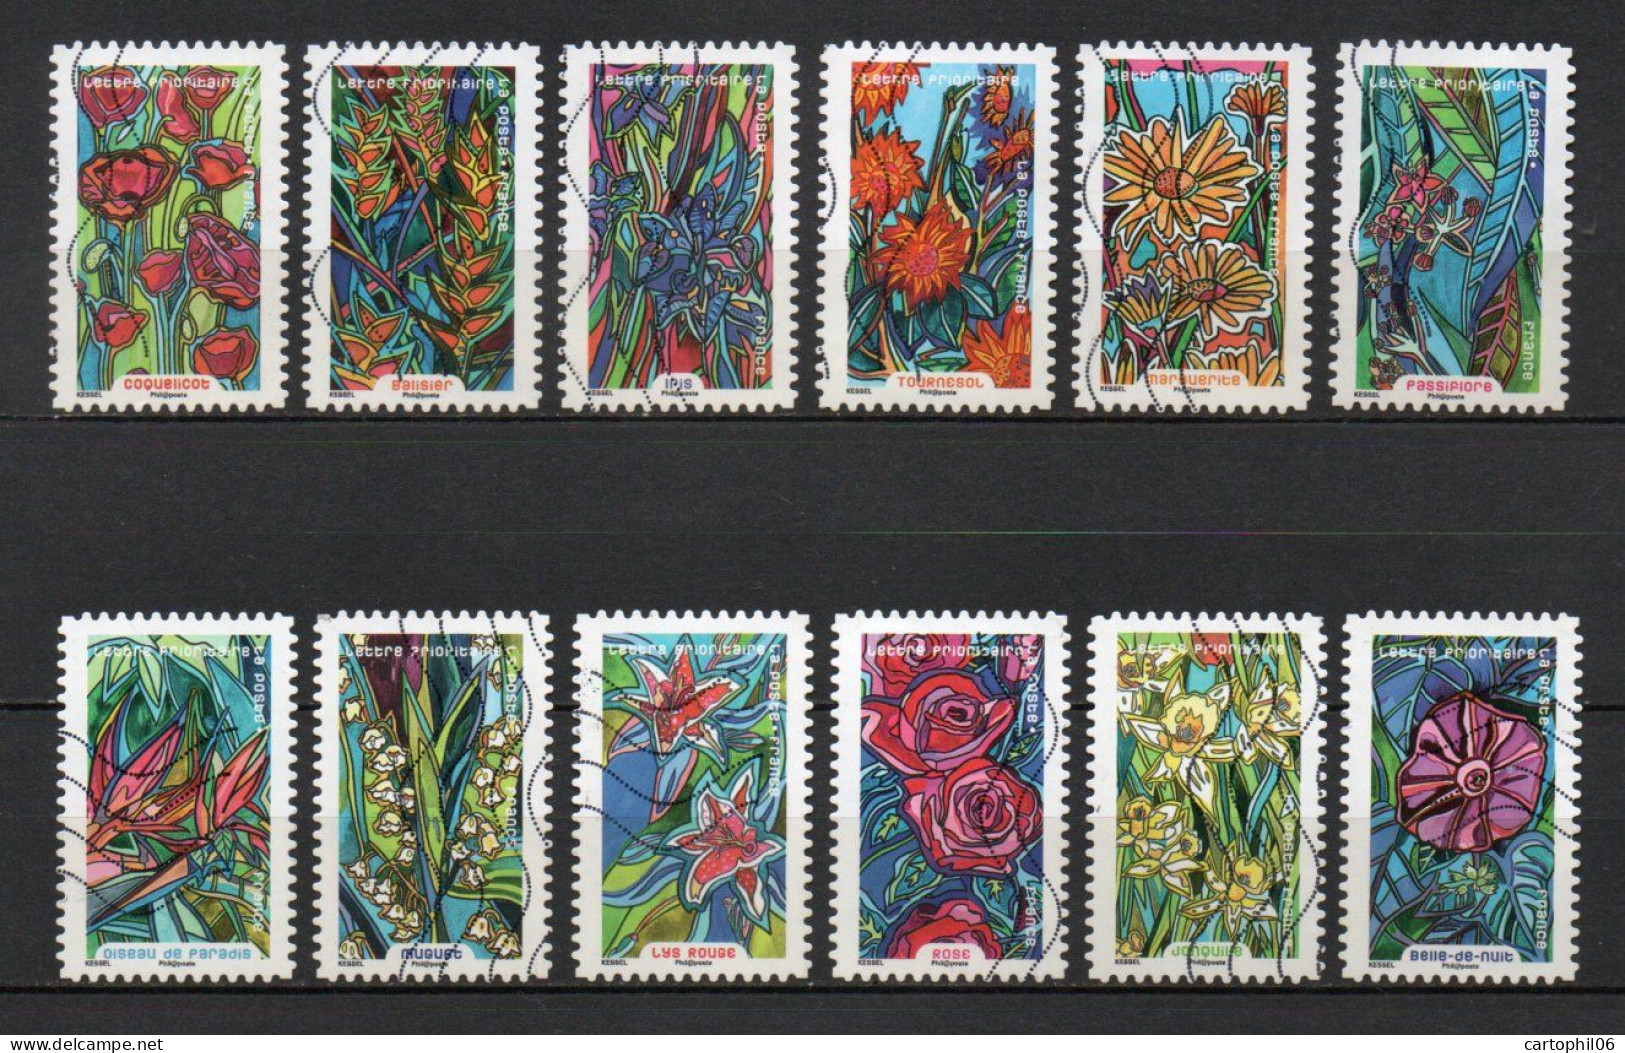 - FRANCE Adhésifs N° 1300/11 Oblitérés - Série Complète FLEURS A FOISON 2016 (12 Timbres) - - Used Stamps